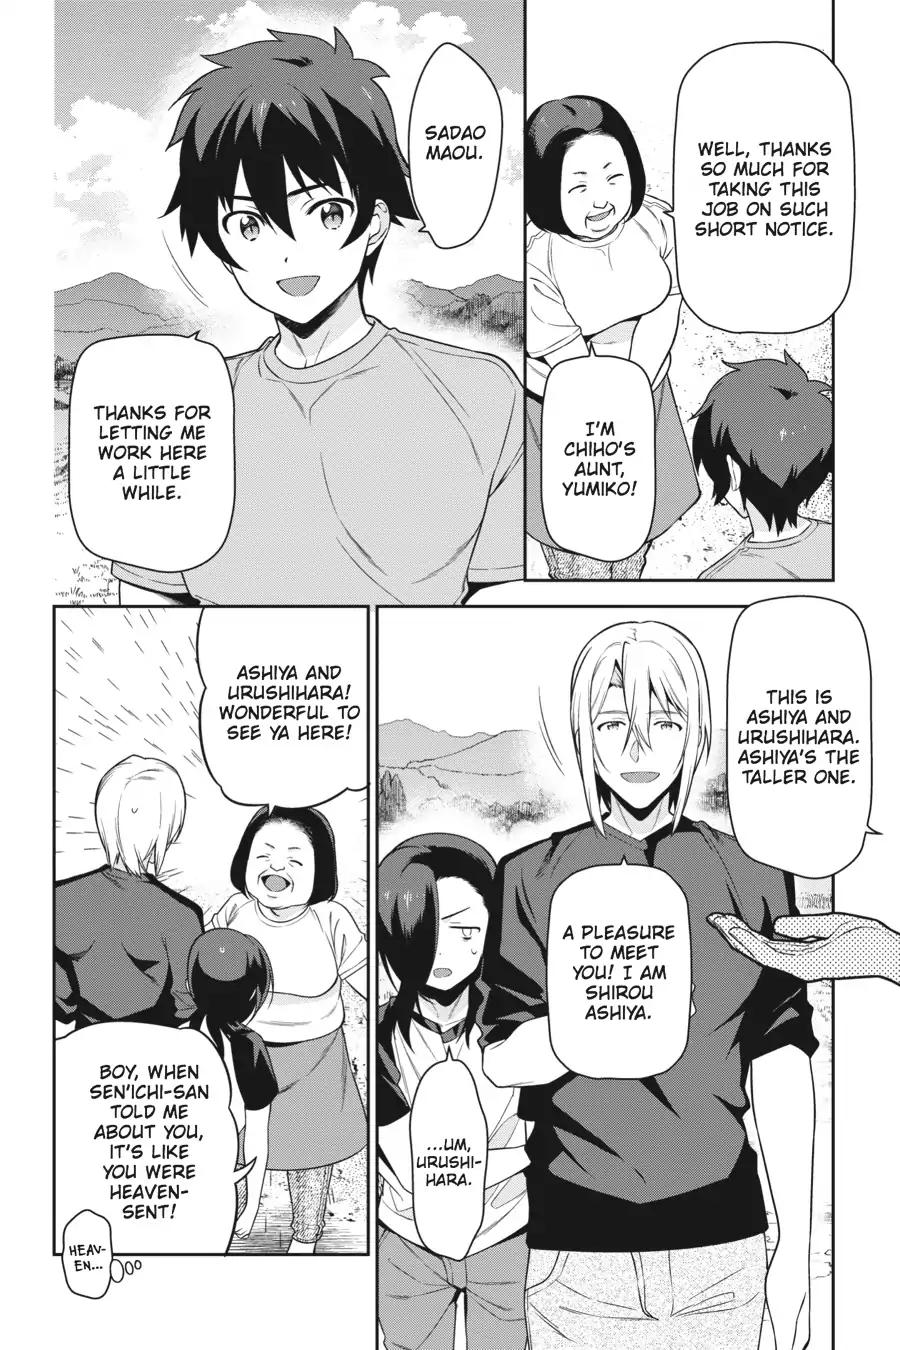 Hataraku Maousama! chapter 55 page 22